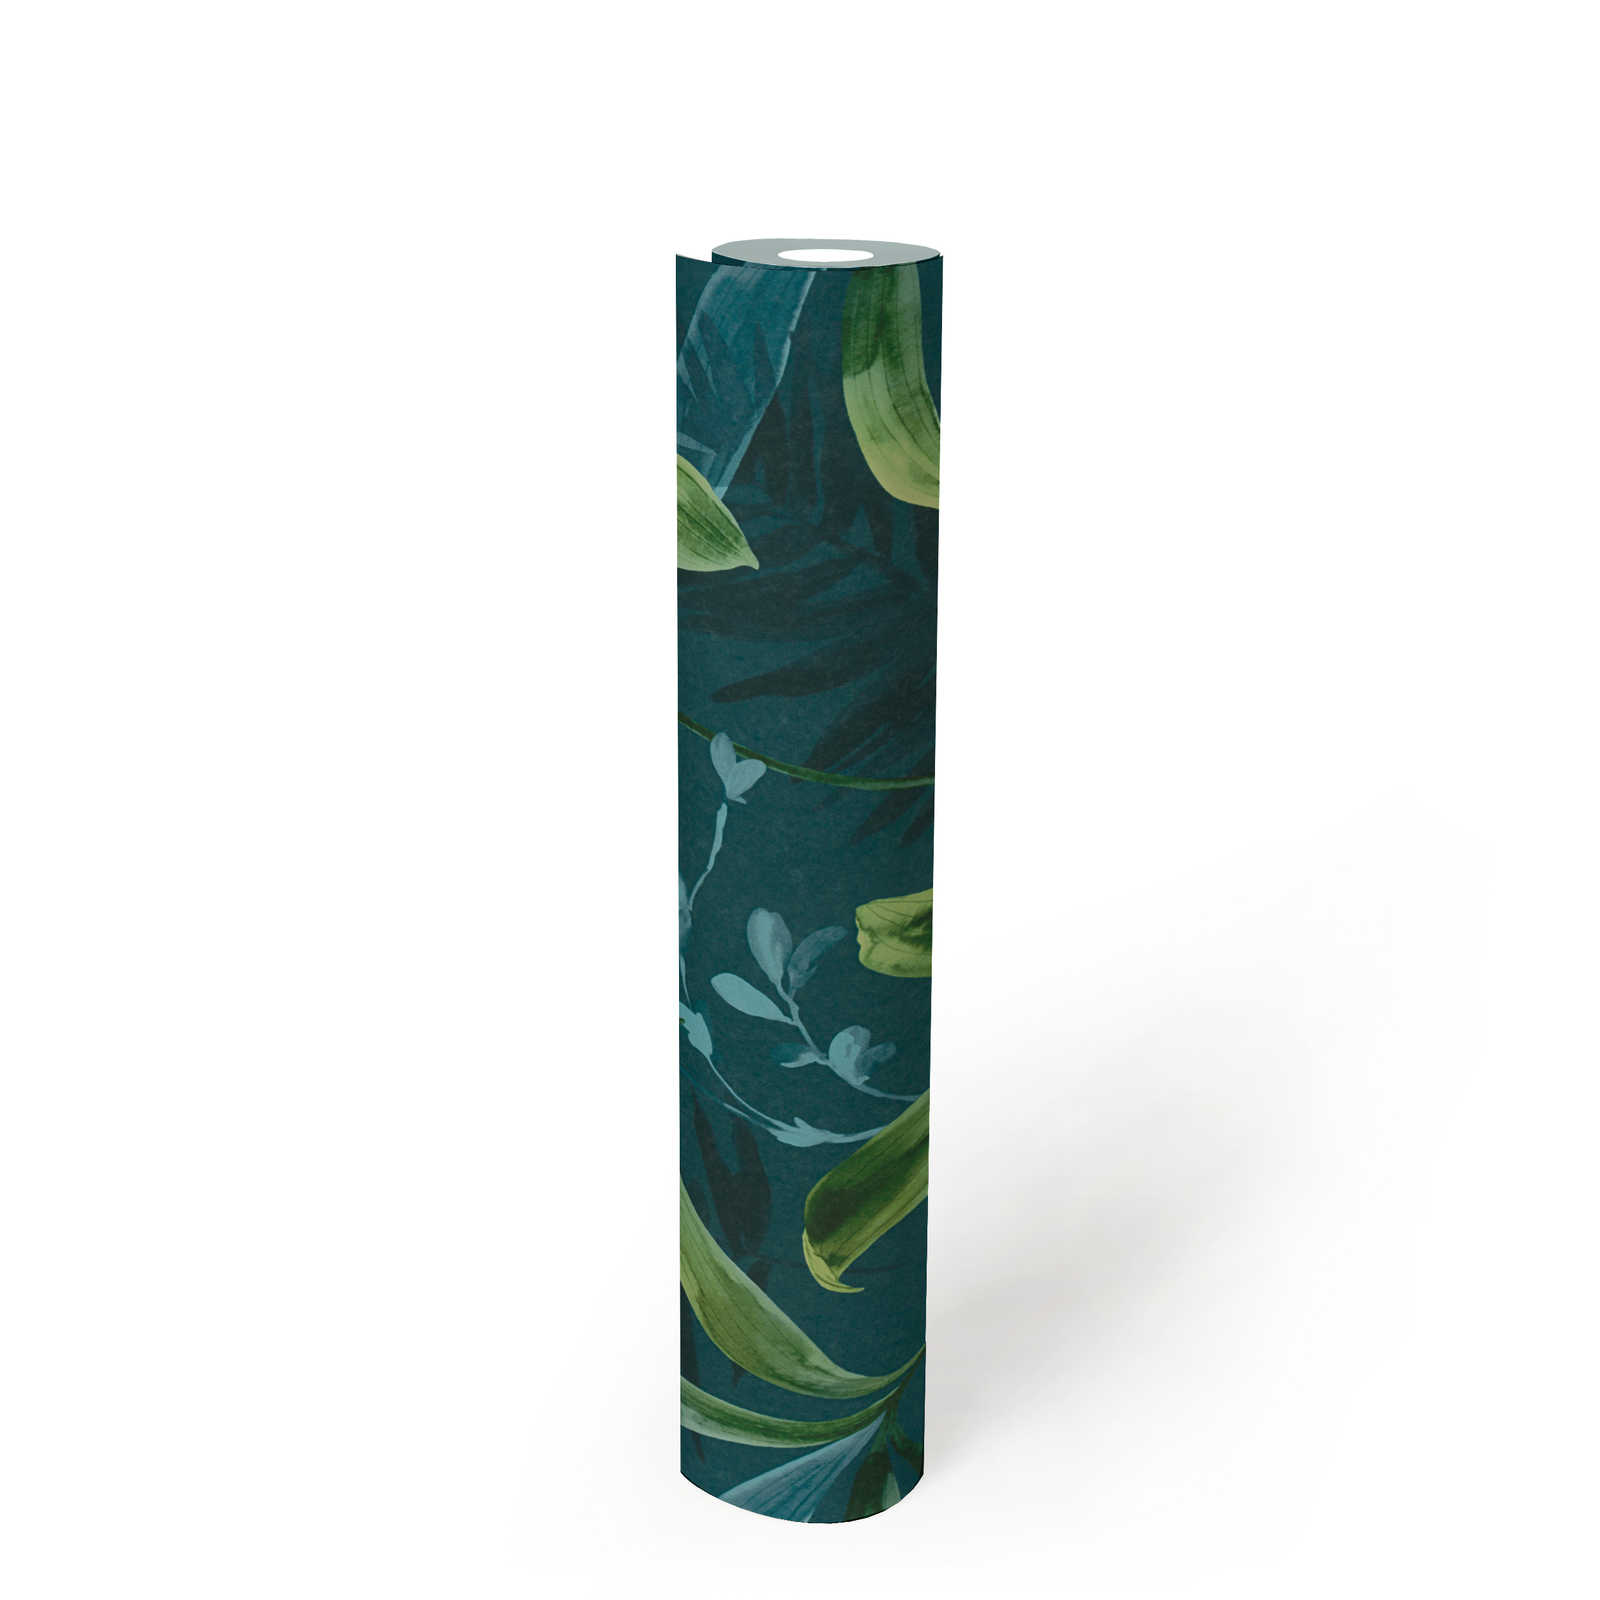             Papier peint vert foncé avec motif de feuilles dans le style aquarelle - bleu, vert
        